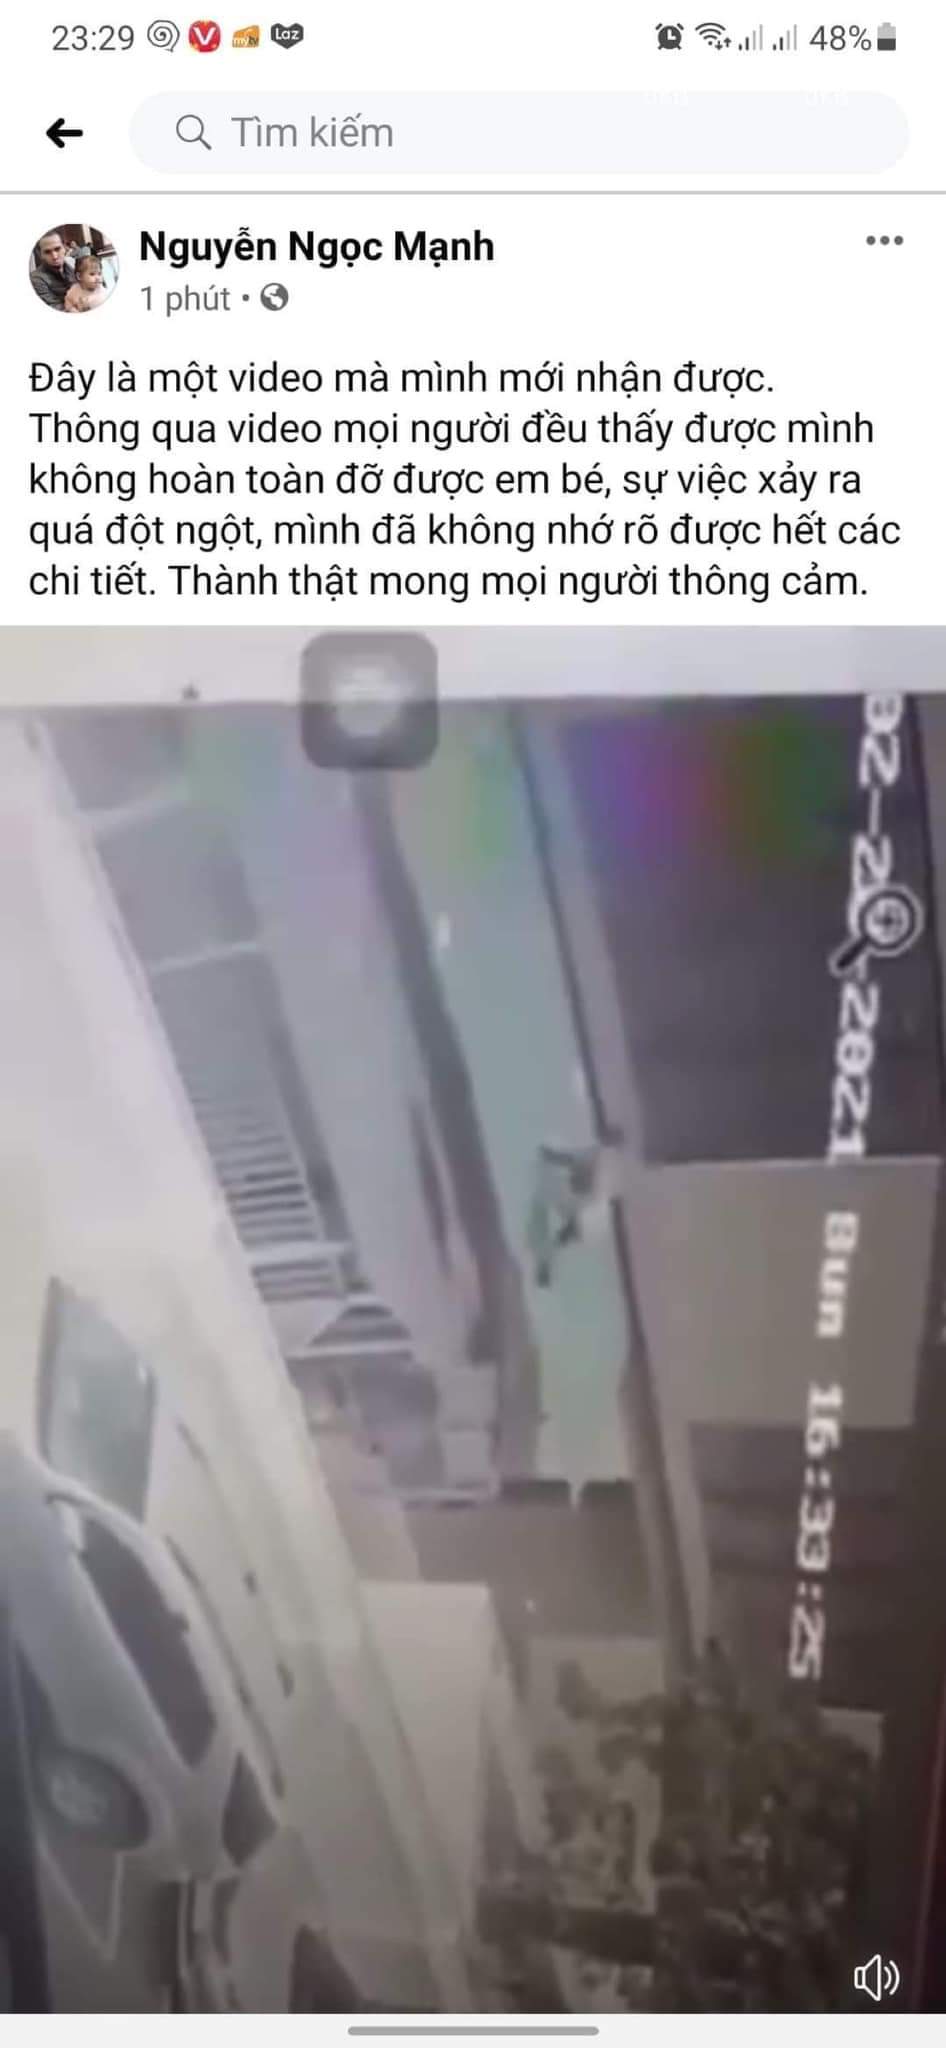 Anh Nguyễn Ngọc Mạnh cũng chia sẻ lại đoạn clip trên. Hiện FB của anh đã khóa.